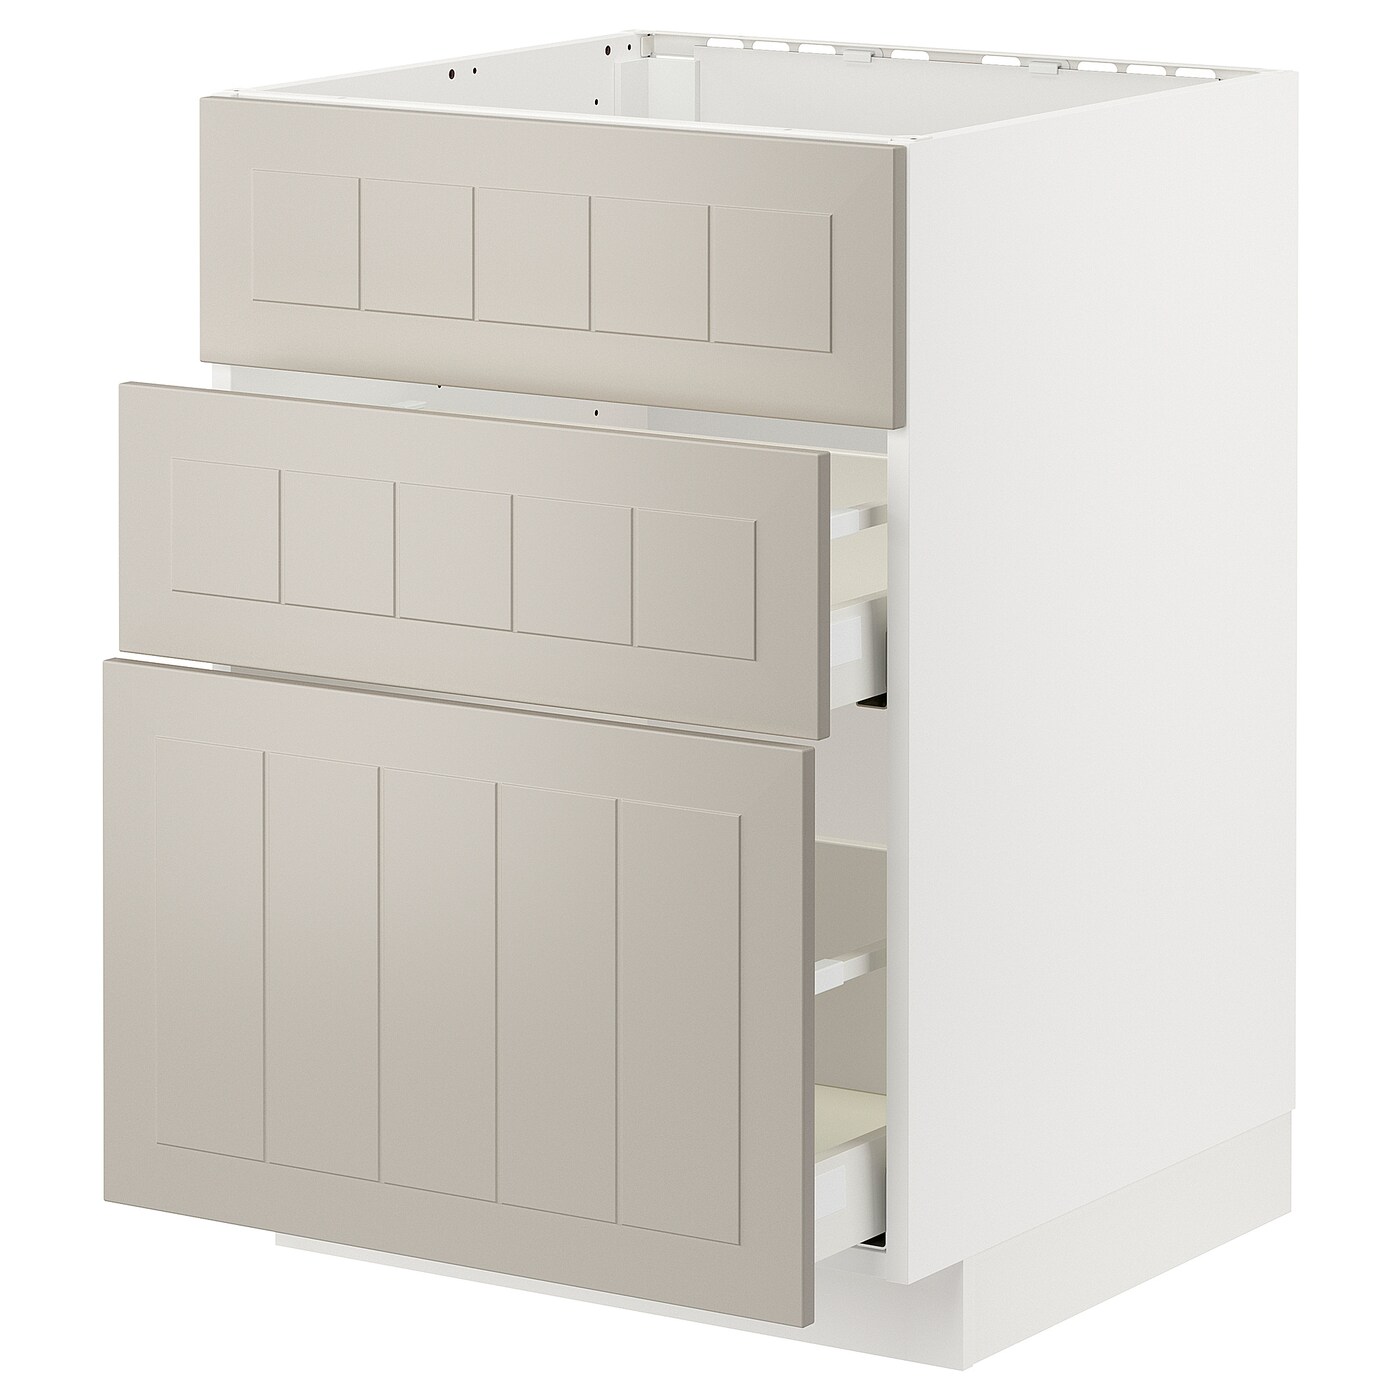 Напольный шкаф - METOD / MAXIMERA IKEA/ МЕТОД/ МАКСИМЕРА ИКЕА,  60х80 см, белый/светло-бежевый